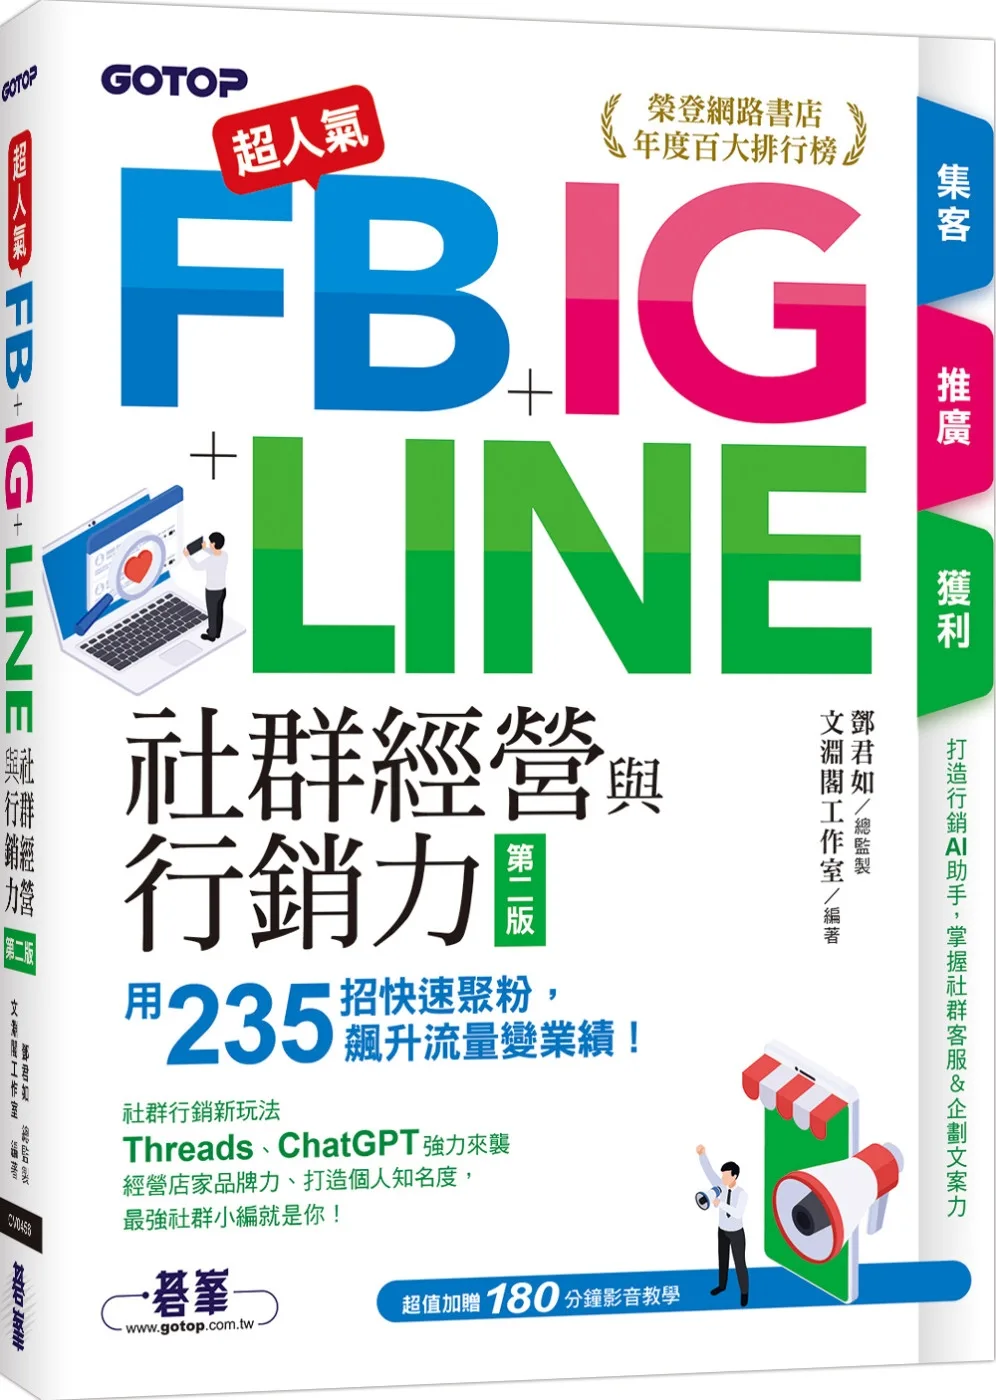 超人氣FB+IG+LINE社群經營與行銷力(第二版)：用235招快速聚粉，飆升流量變業績！(附Threads、ChatGPT行銷影音)